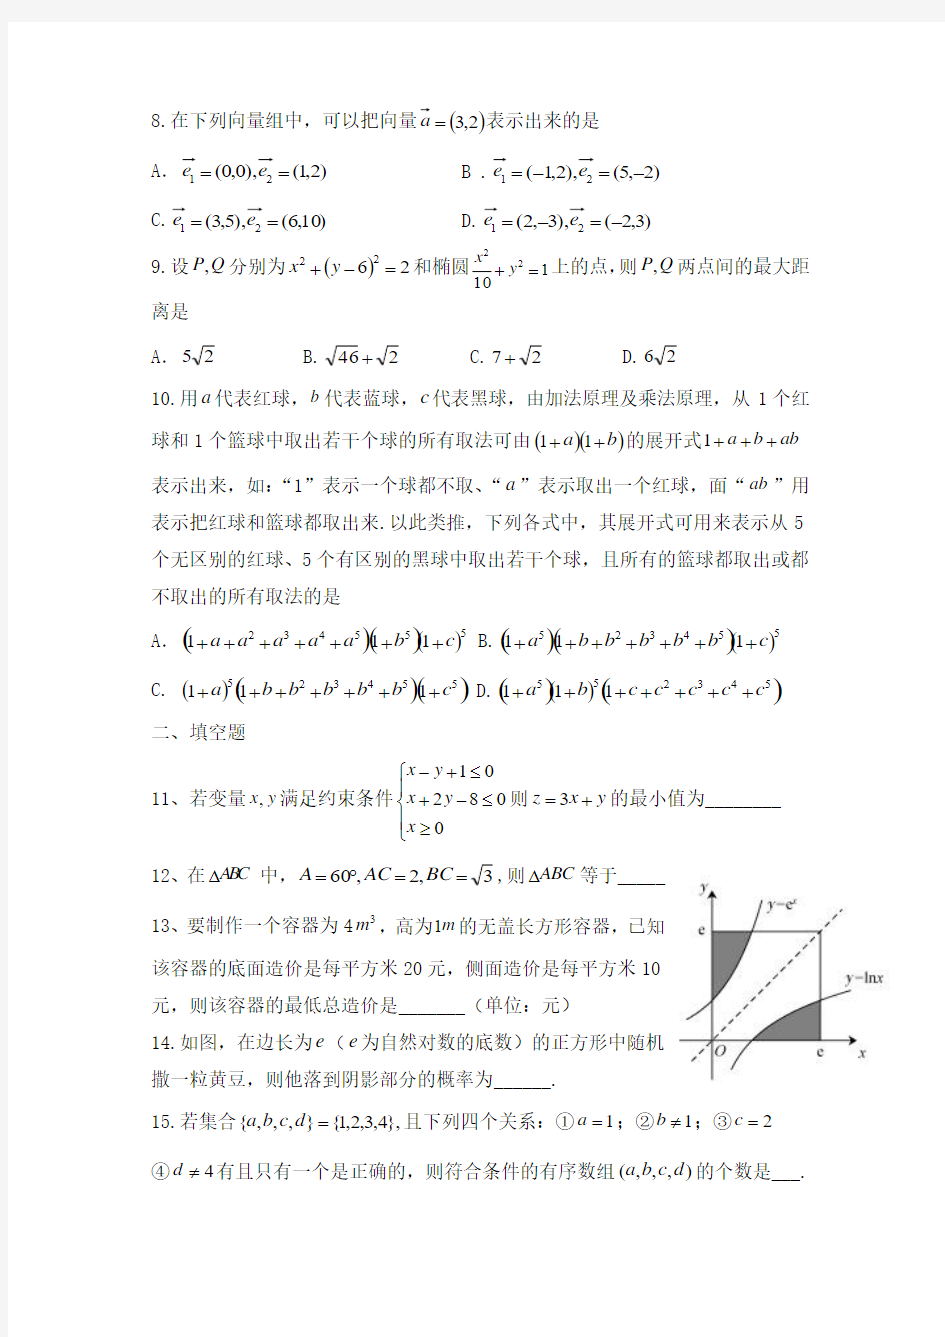 2014年高考理科数学试题(福建卷)及参考答案